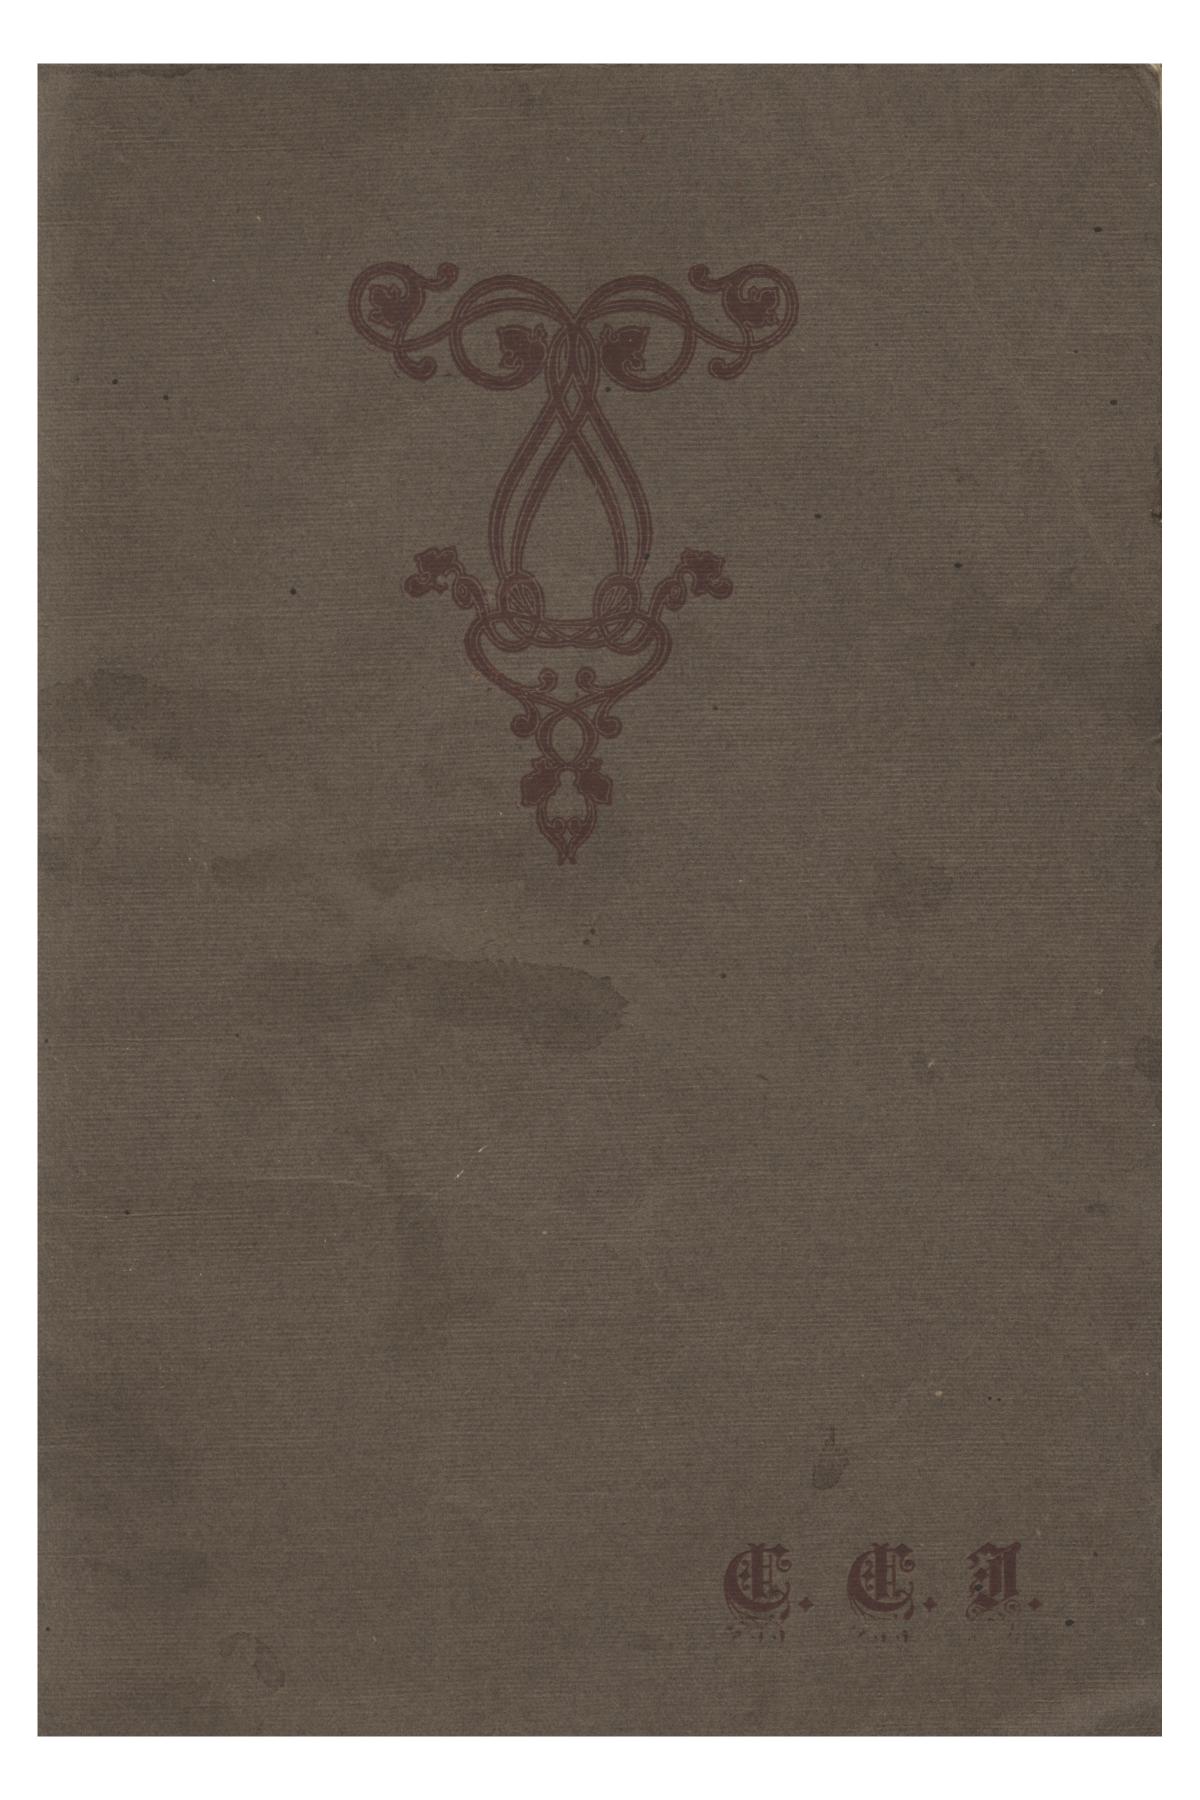 Catalog of Abilene Christian College, 1906-1907
                                                
                                                    Front Cover
                                                